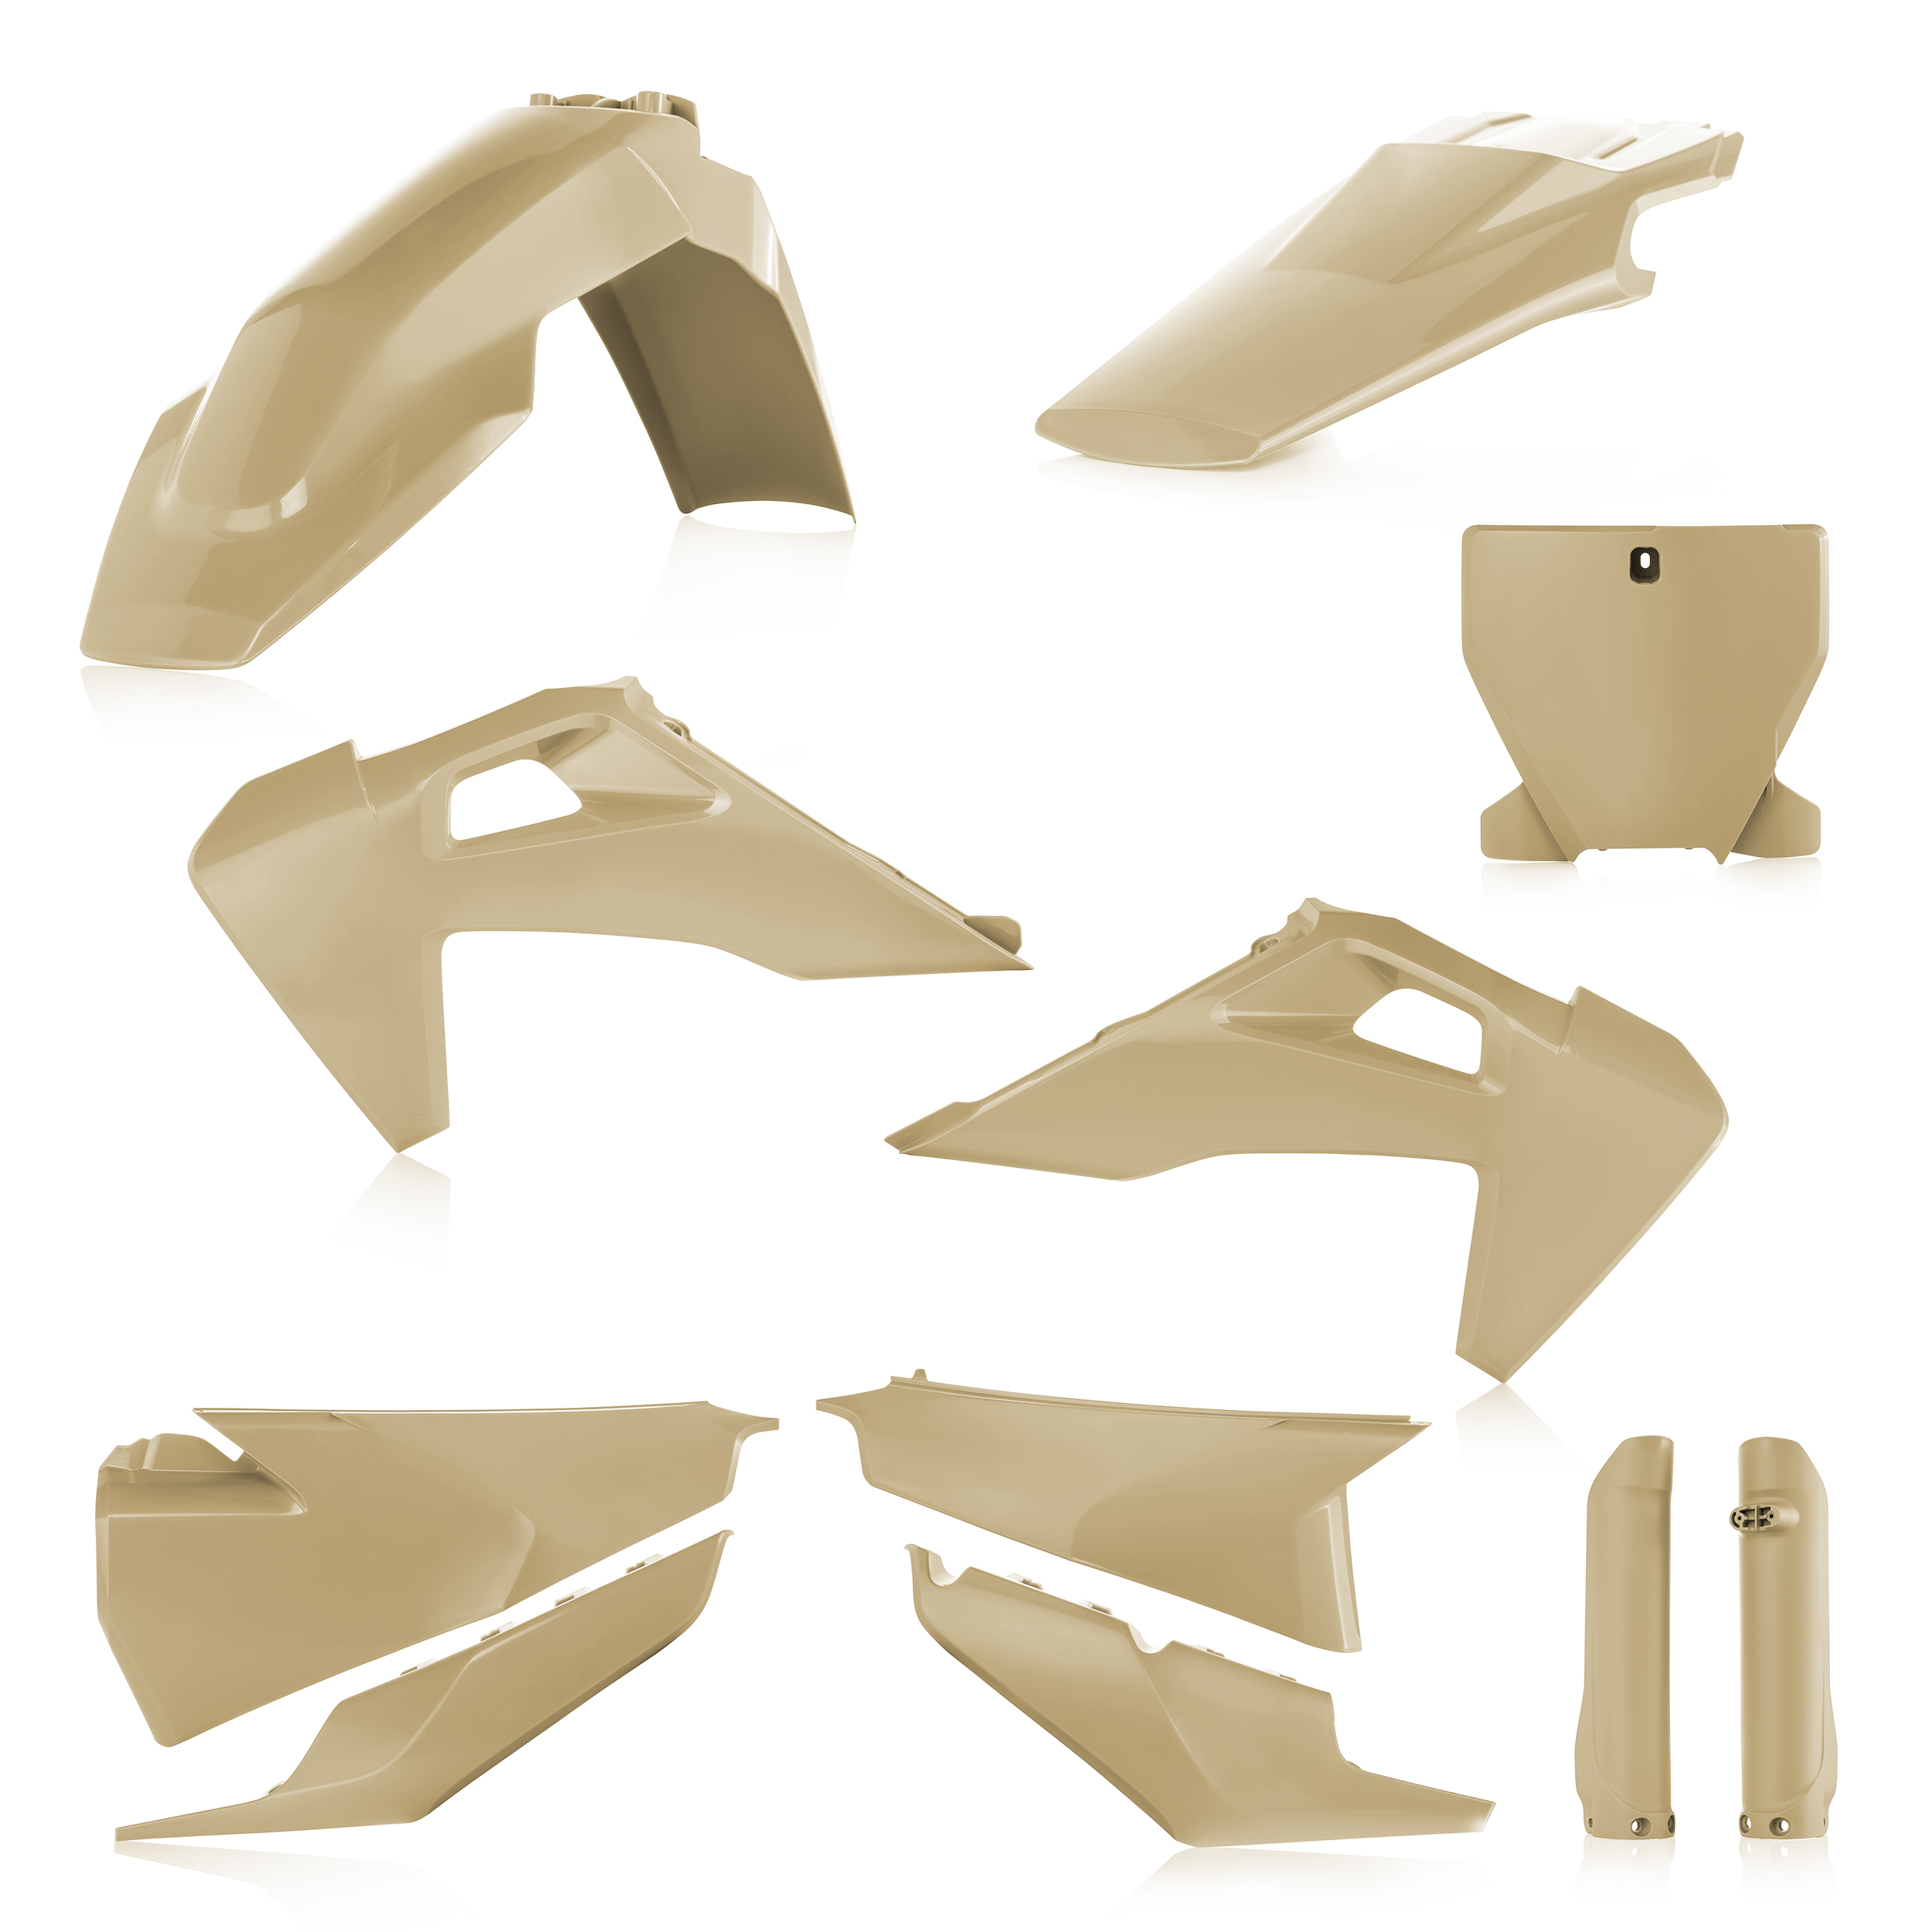 Plastikteile für deine Husqvarna FC / TC 125-450 in sand bestehend aus Kotflügel vorn Kotflügel hinten Kühlerspoiler Seitenteile Gabelschützer Startnummerntafel